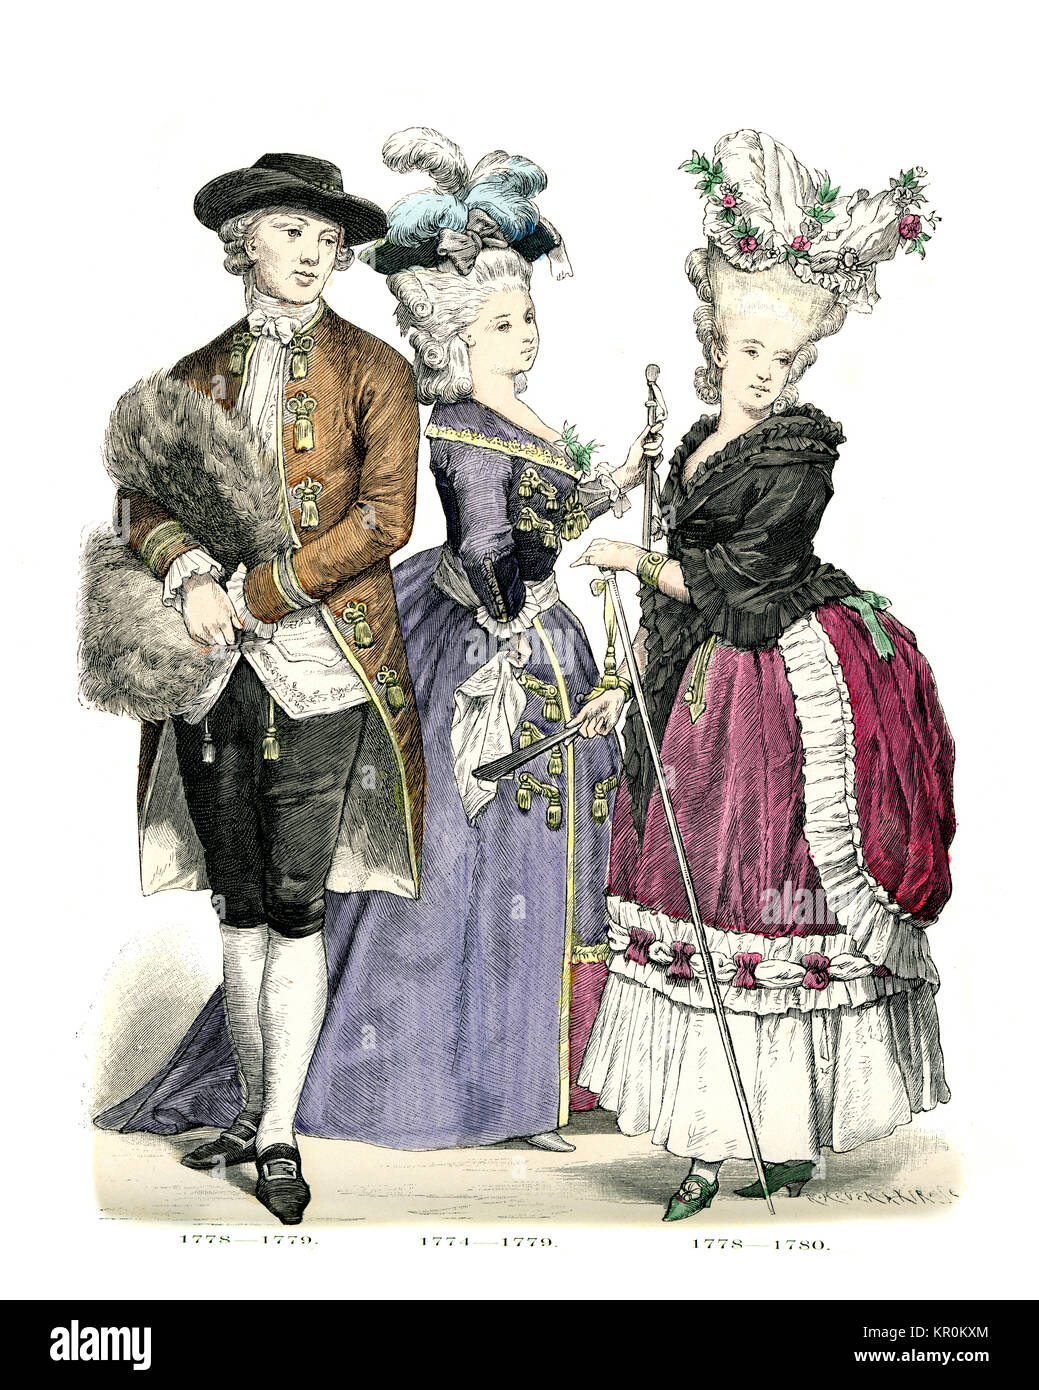 Histoire de la mode, des costumes de Français, hommes et femmes de la fin du xviiie siècle Banque D'Images